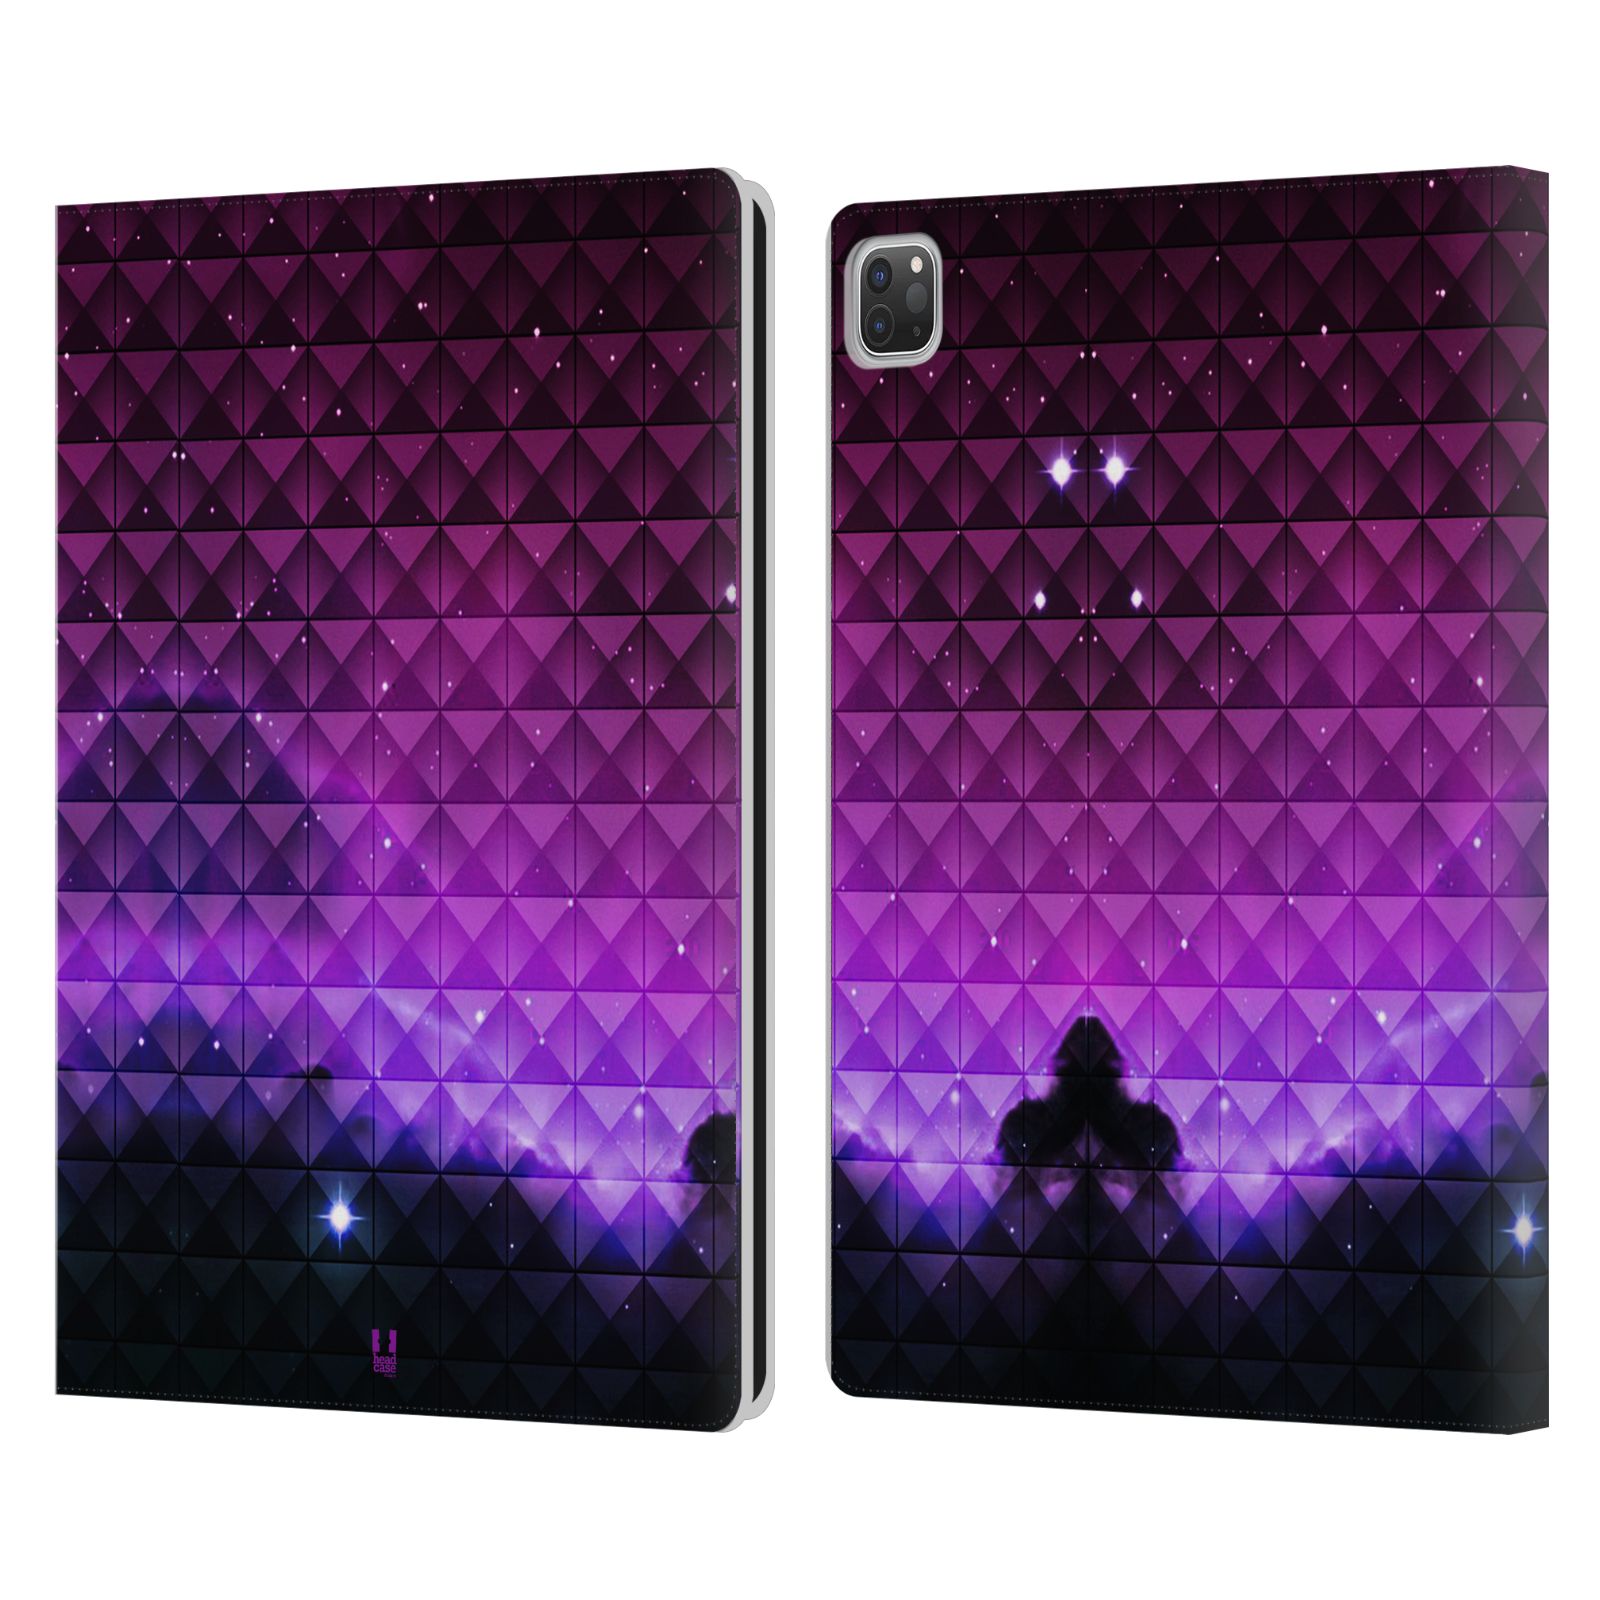 Pouzdro pro tablet Apple Ipad Pro 12.9 - HEAD CASE - barevná vesmírná mlhovina fialová a černá